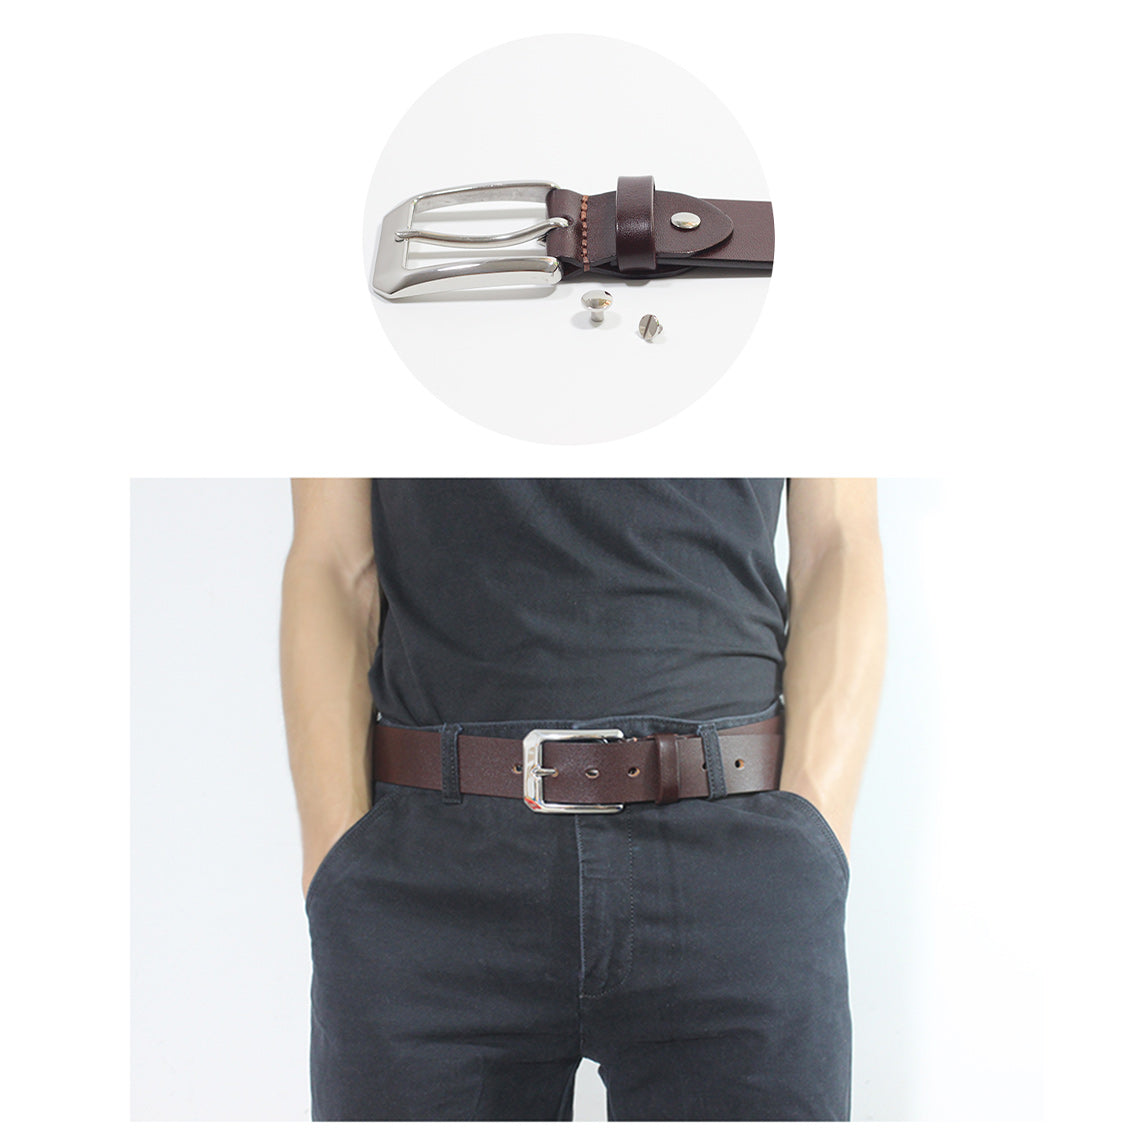 Making a Leather Belt Kit | Best DIY Gifts for Men - POPSEWING®